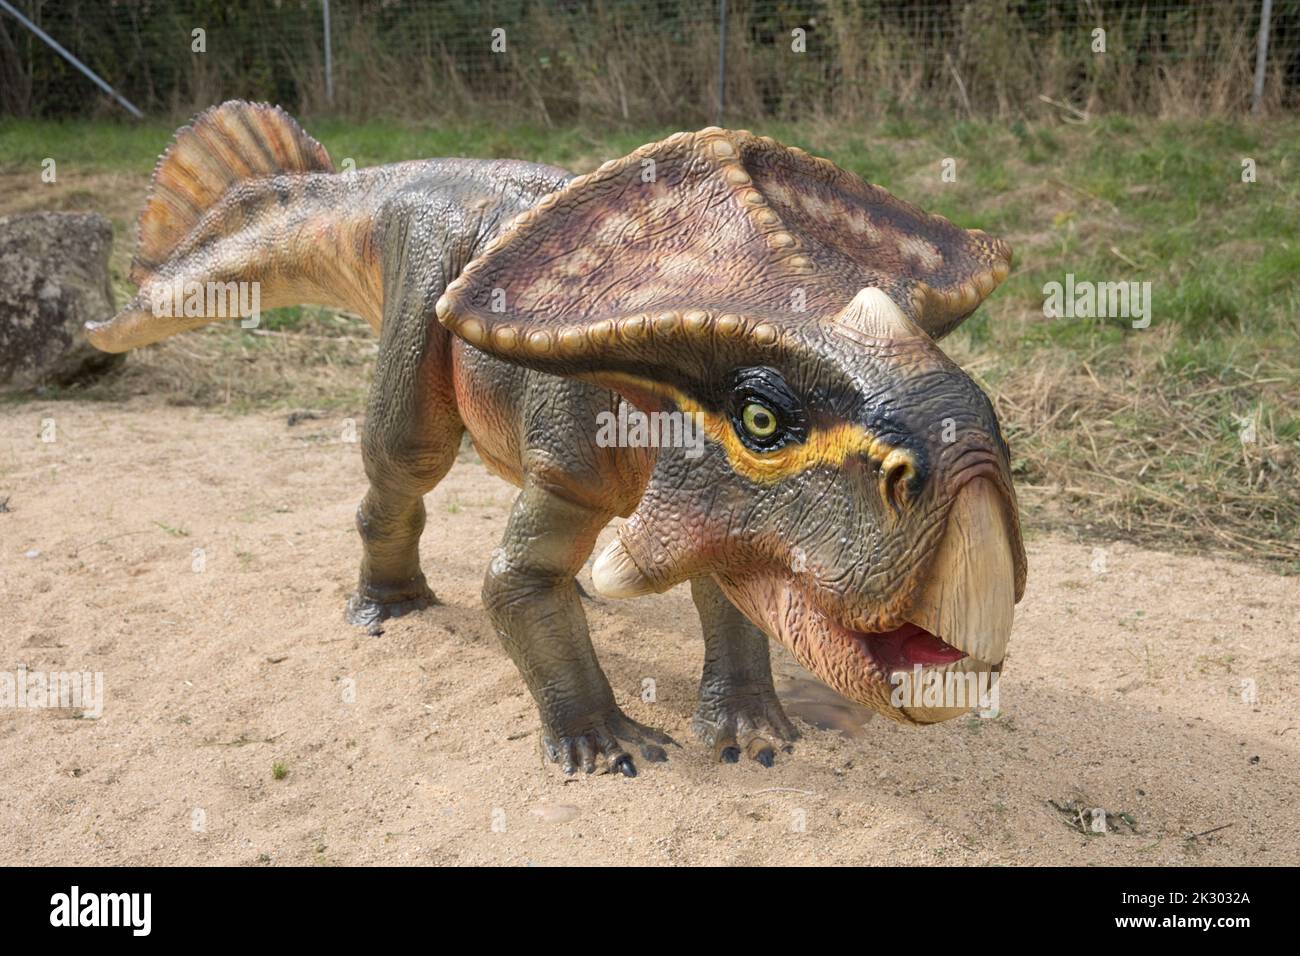 Lifesize model of extinct dinosaur Protoceratops at All Things Wild, Honeybourne, UK Stock Photo